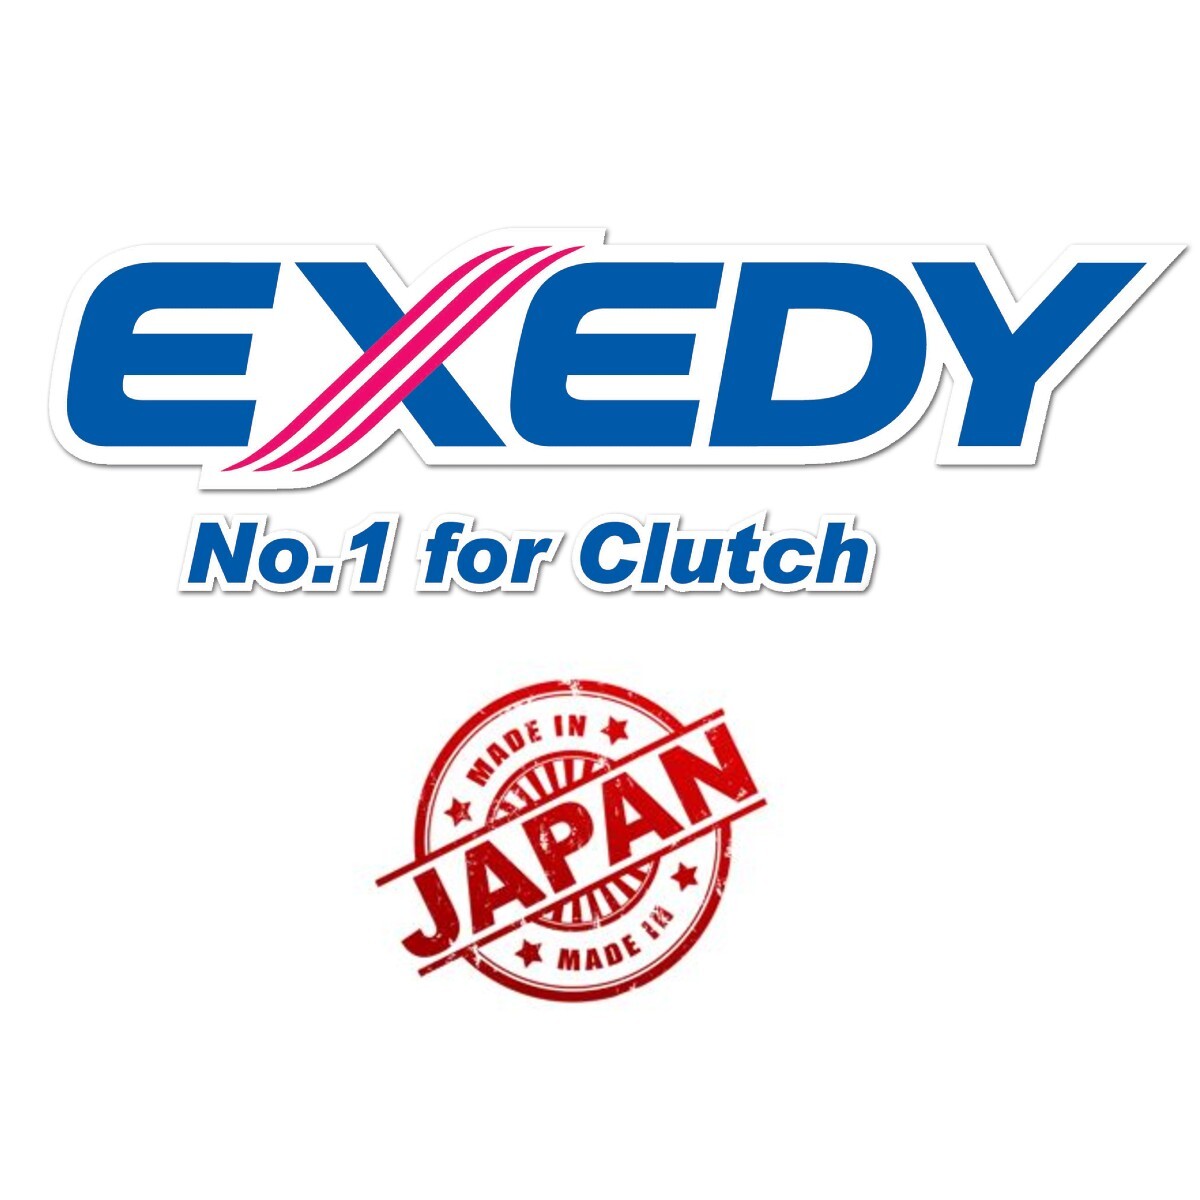 Exedy Clutch Kit VWK-6040 VW GOLF 17 1.1 37 1.6 55 1.5d 19E 1G1 1.6d 40 PASSAT